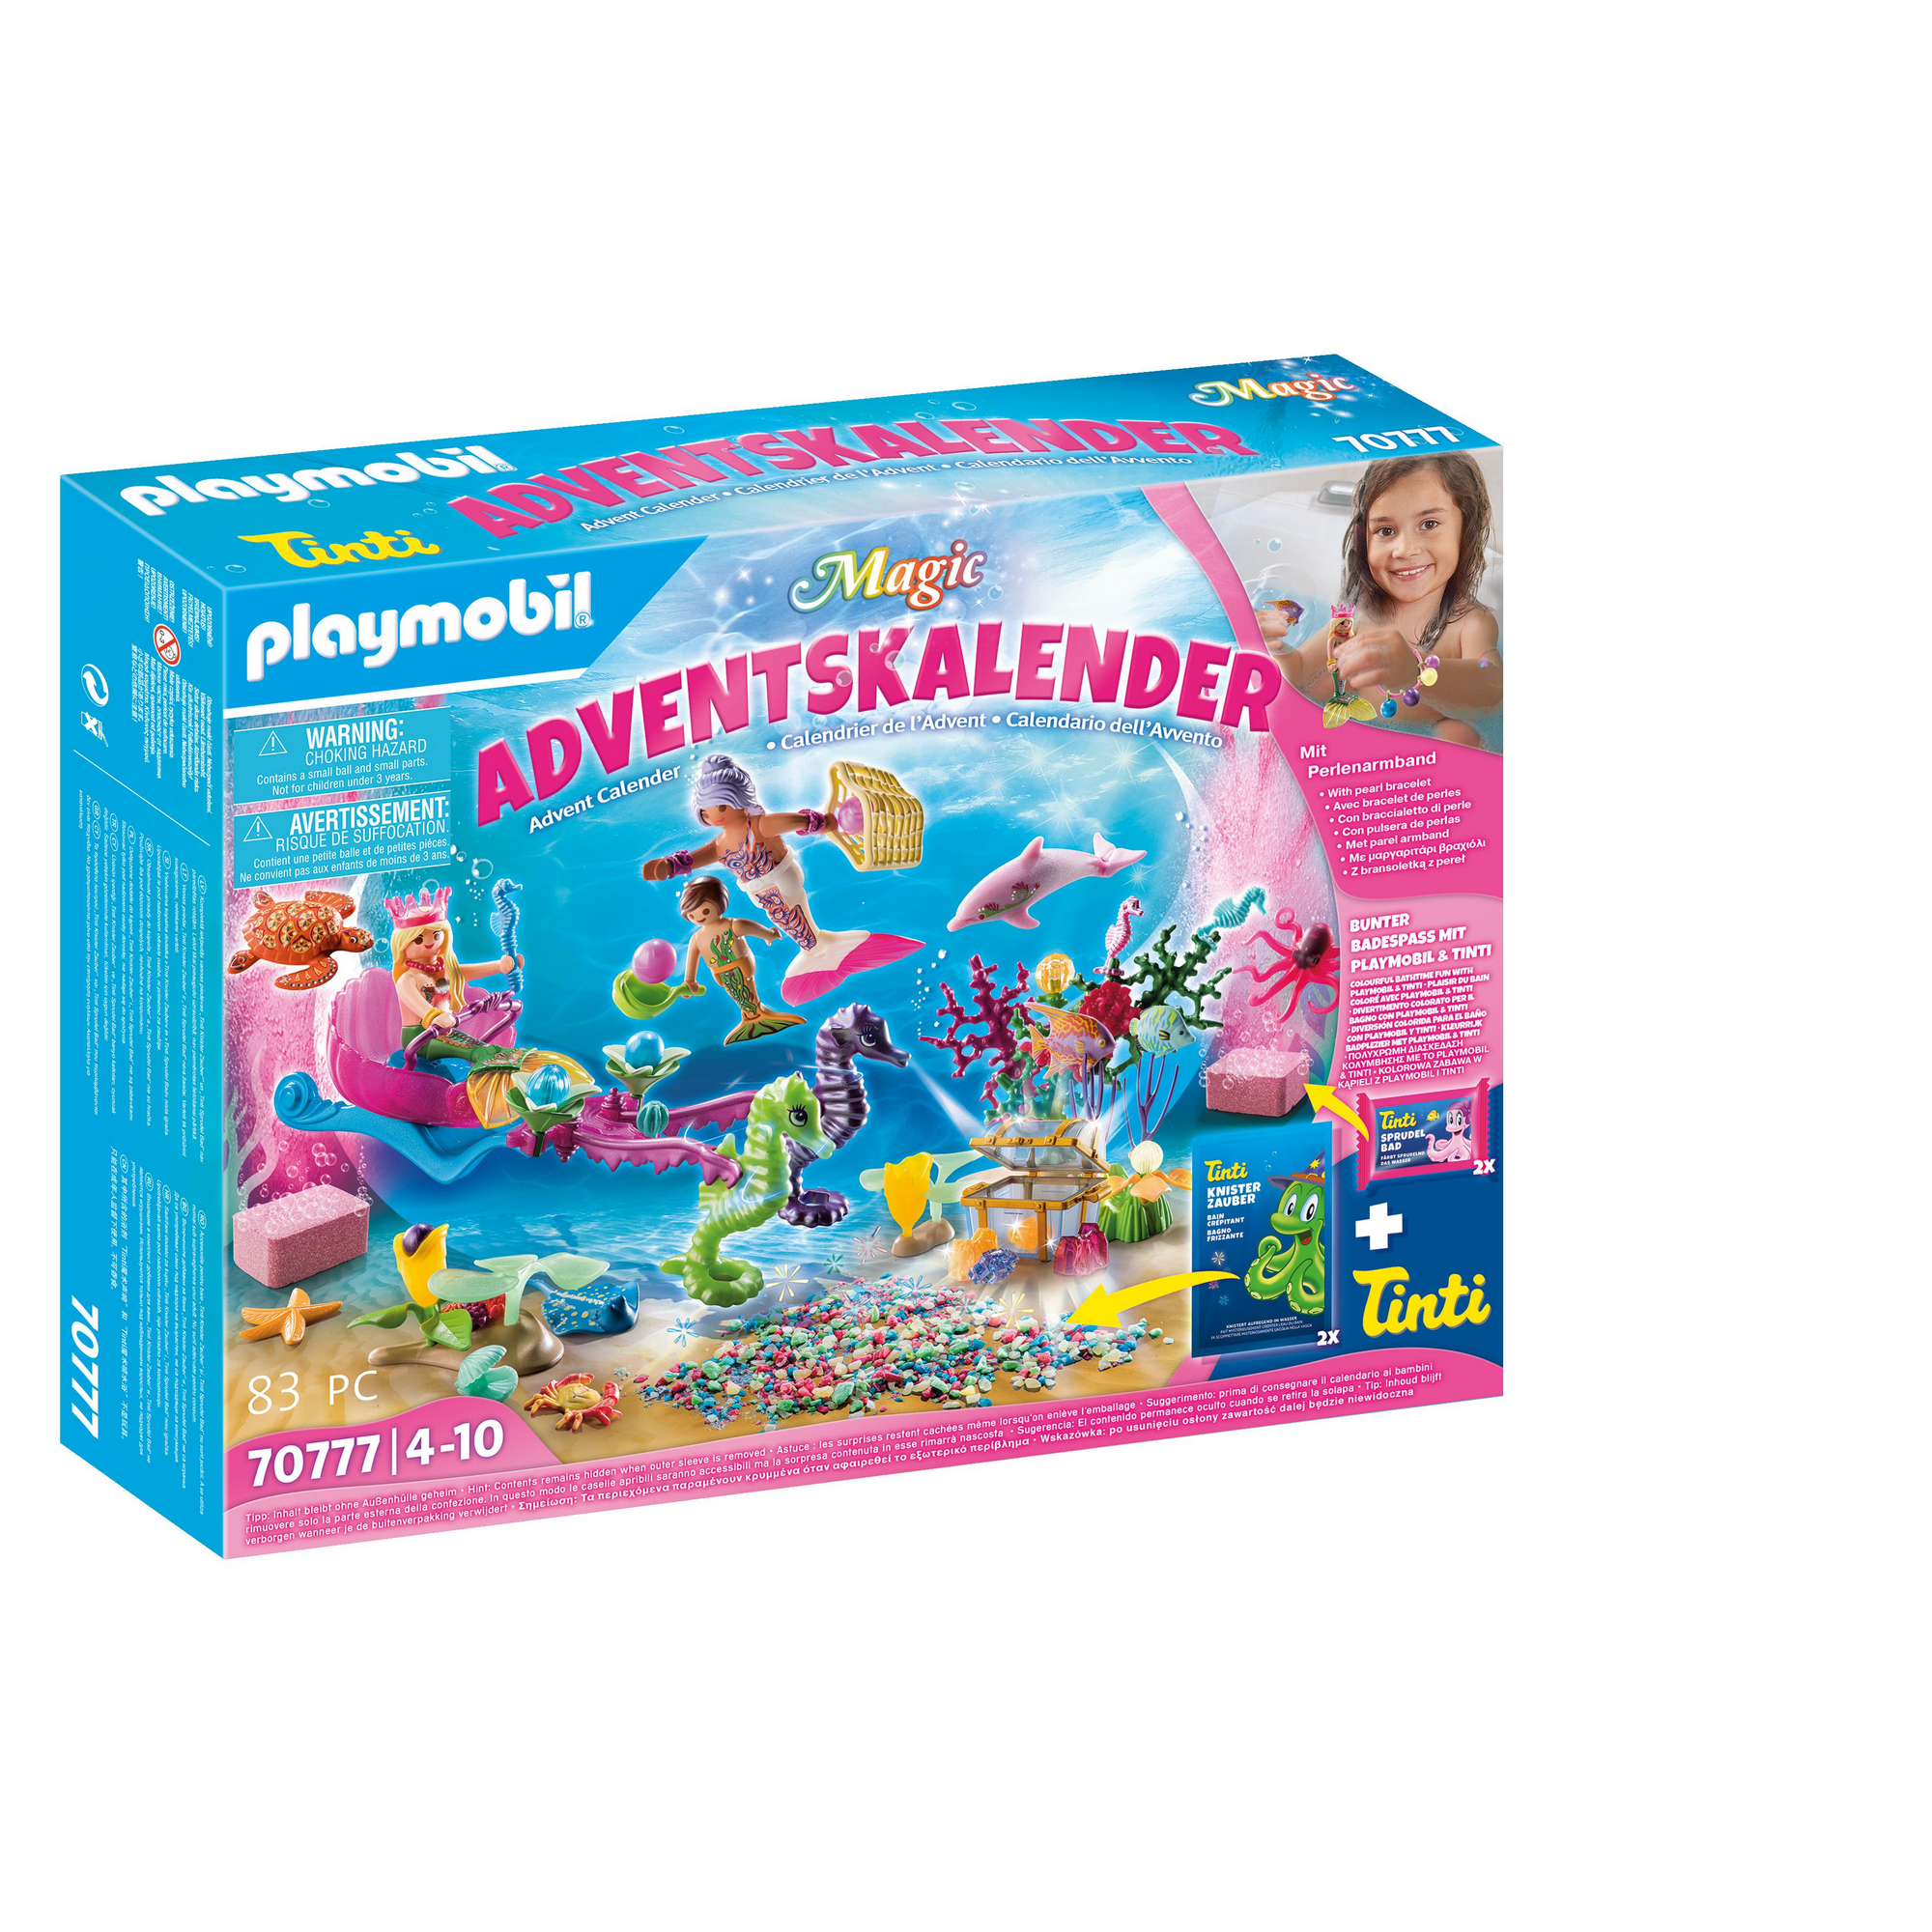 Adventskalender 'Badespaß Meerjungfrauen' 51-teilig + product picture